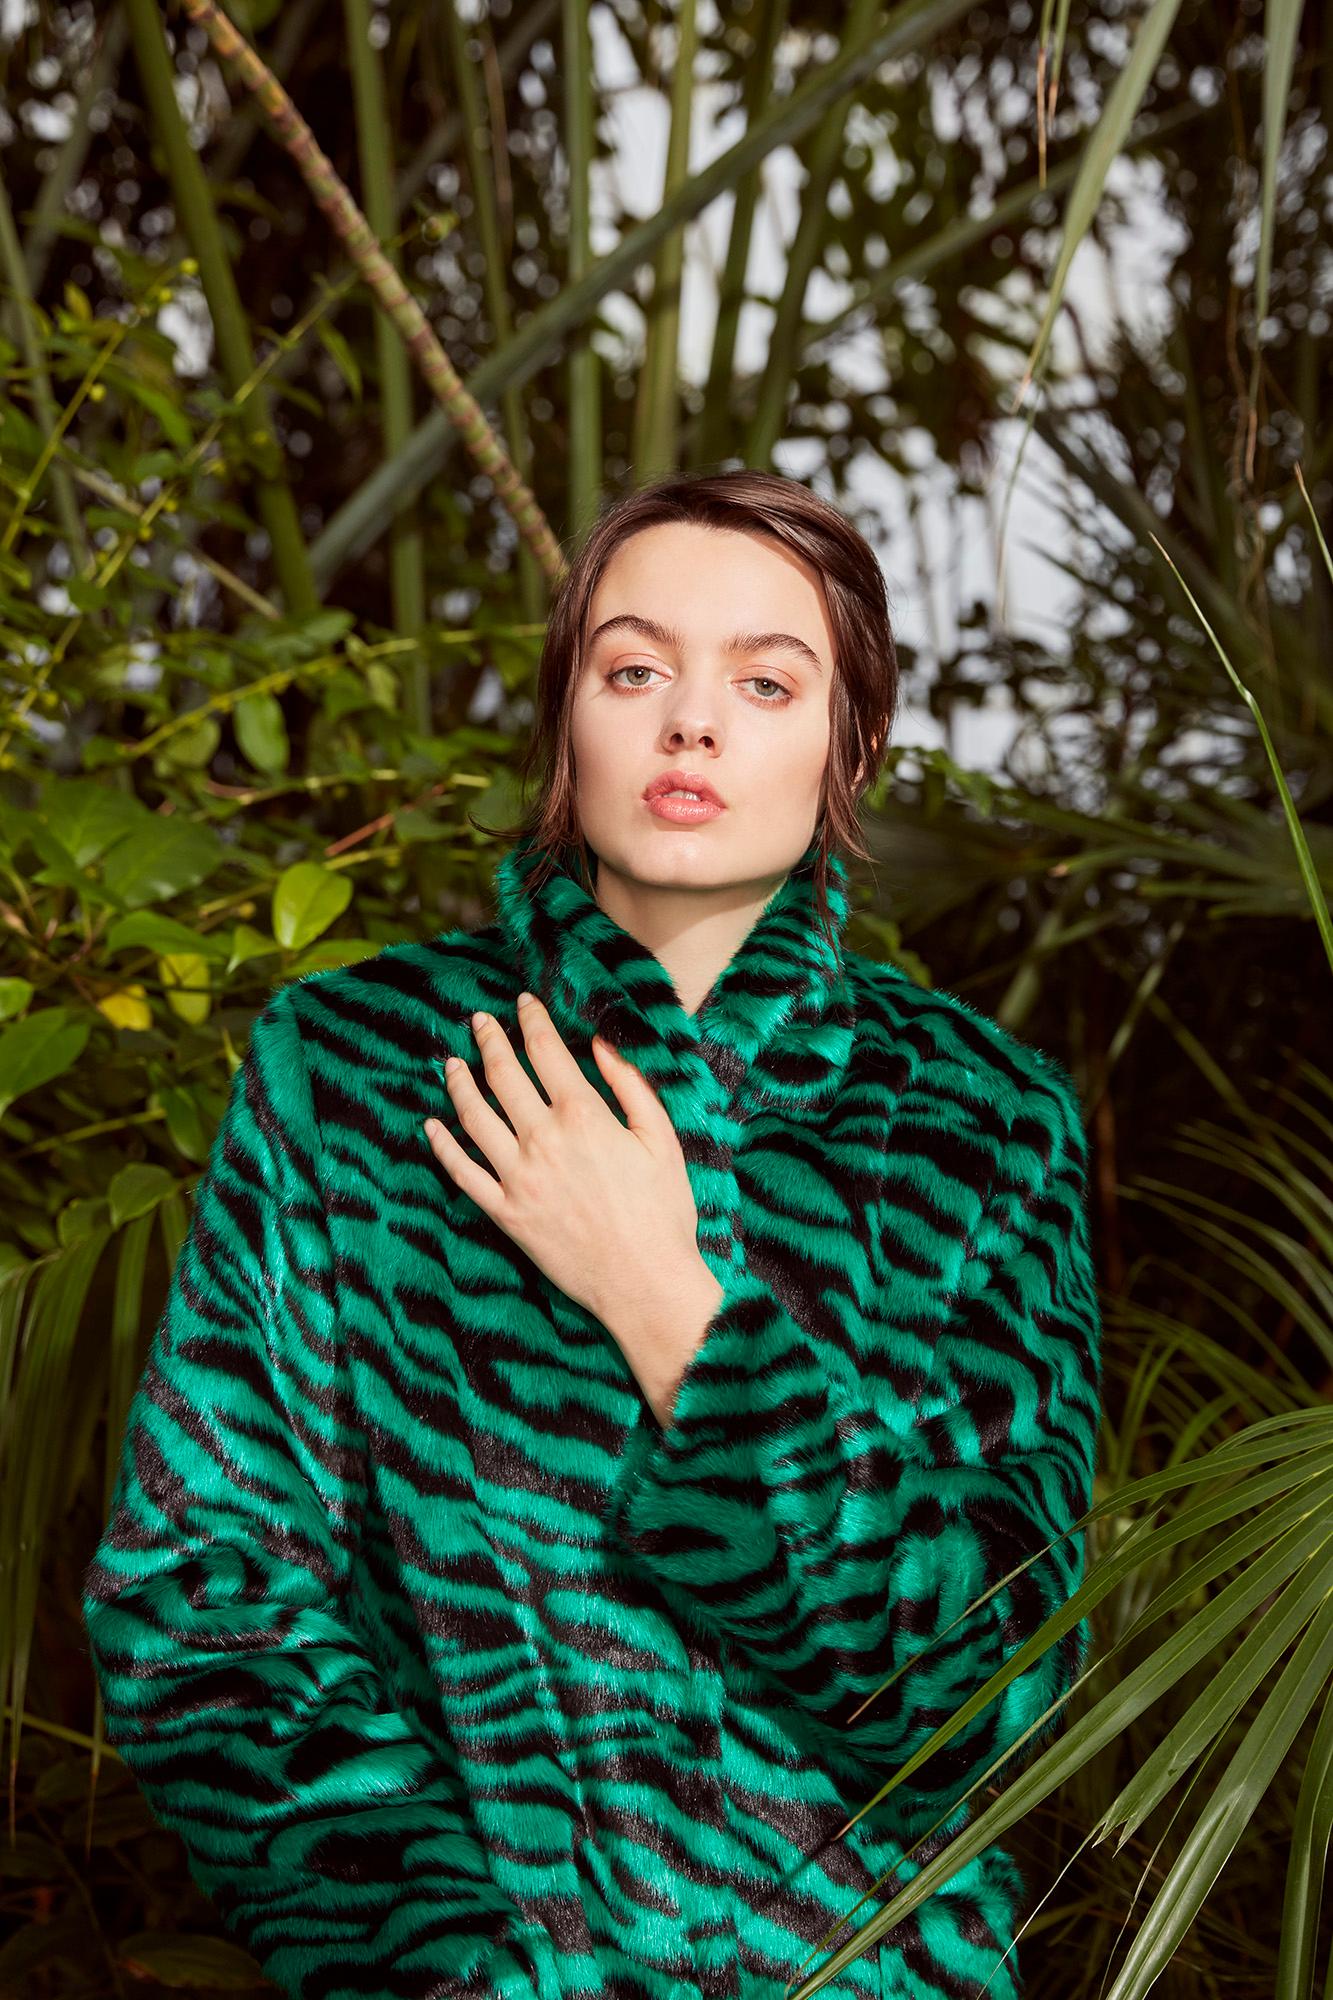 Verheyen London Esmeralda Faux Fur Coat in Emerald Green Zebra Print size uk 8 For Sale 3